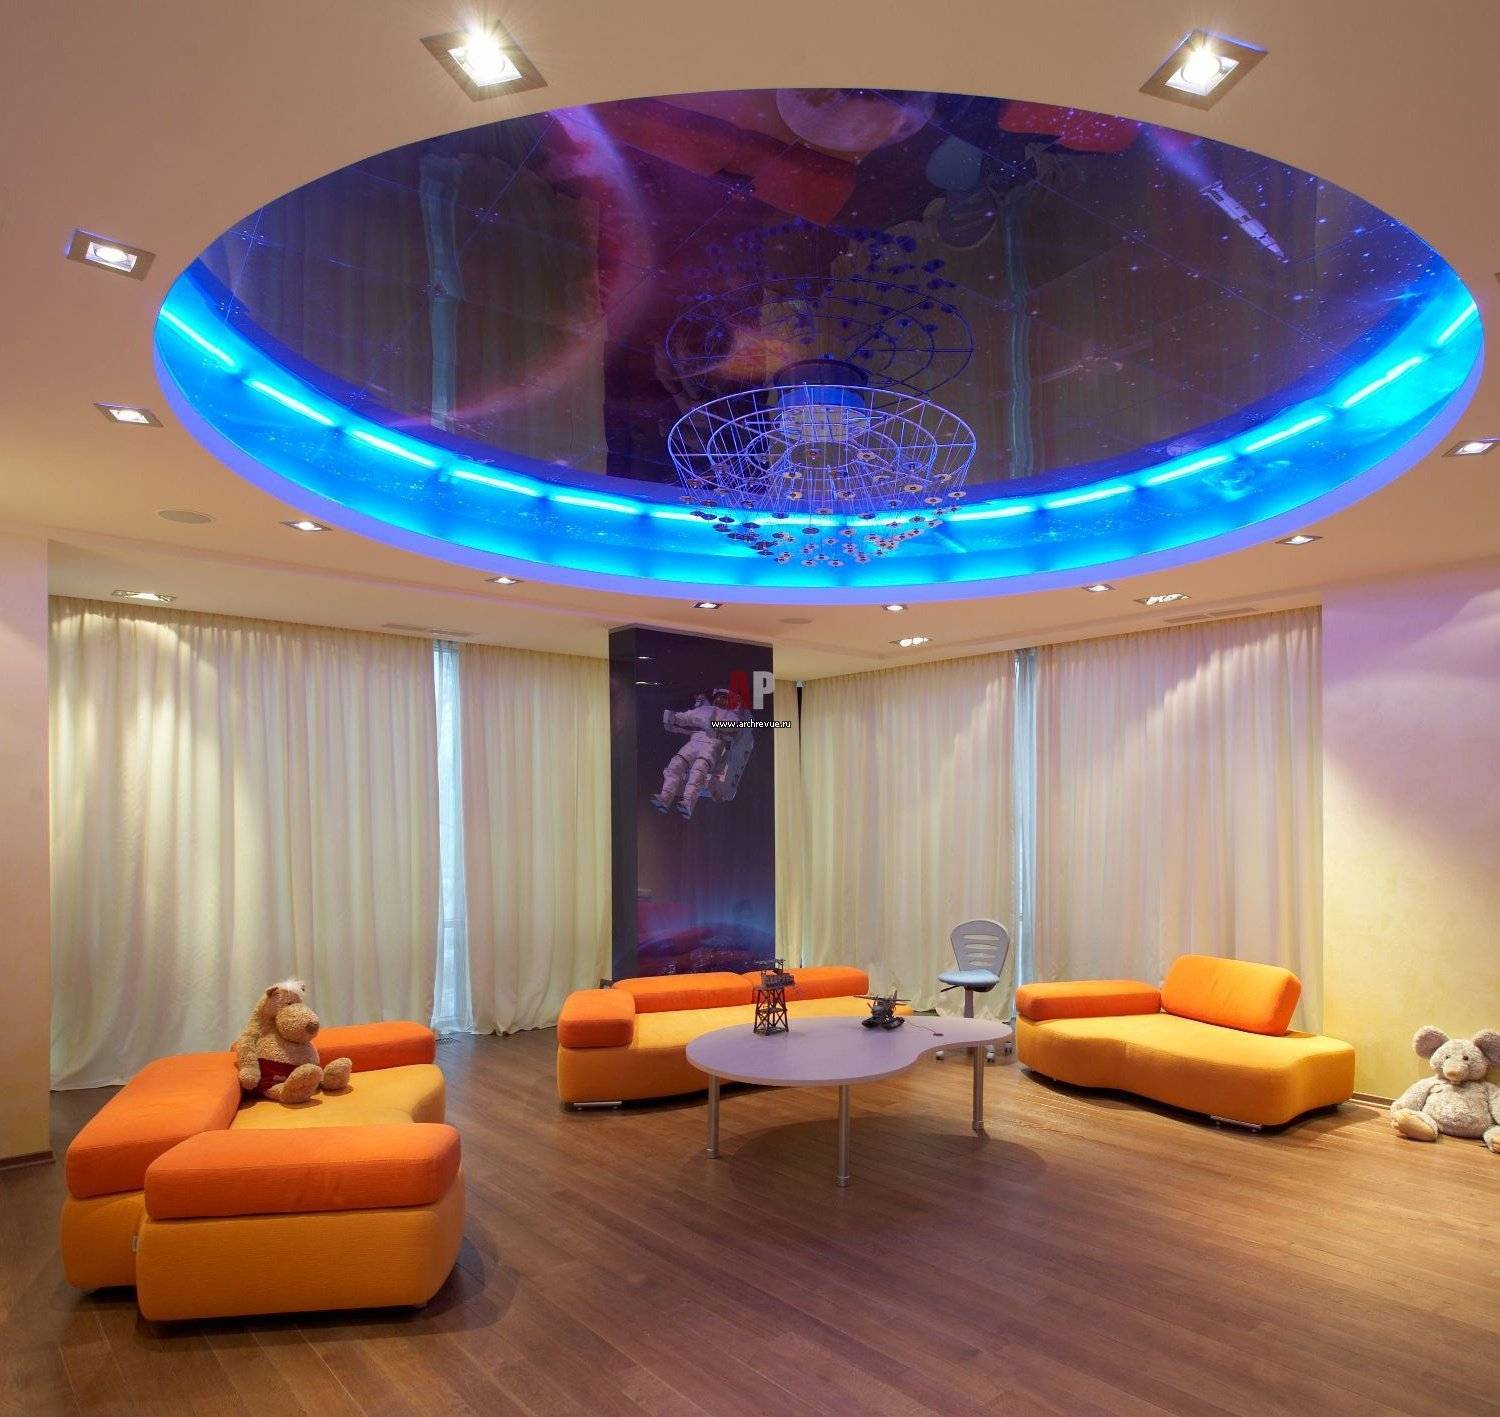 Двухуровневый потолок натяжной с подсветкой в зал - 35 фото